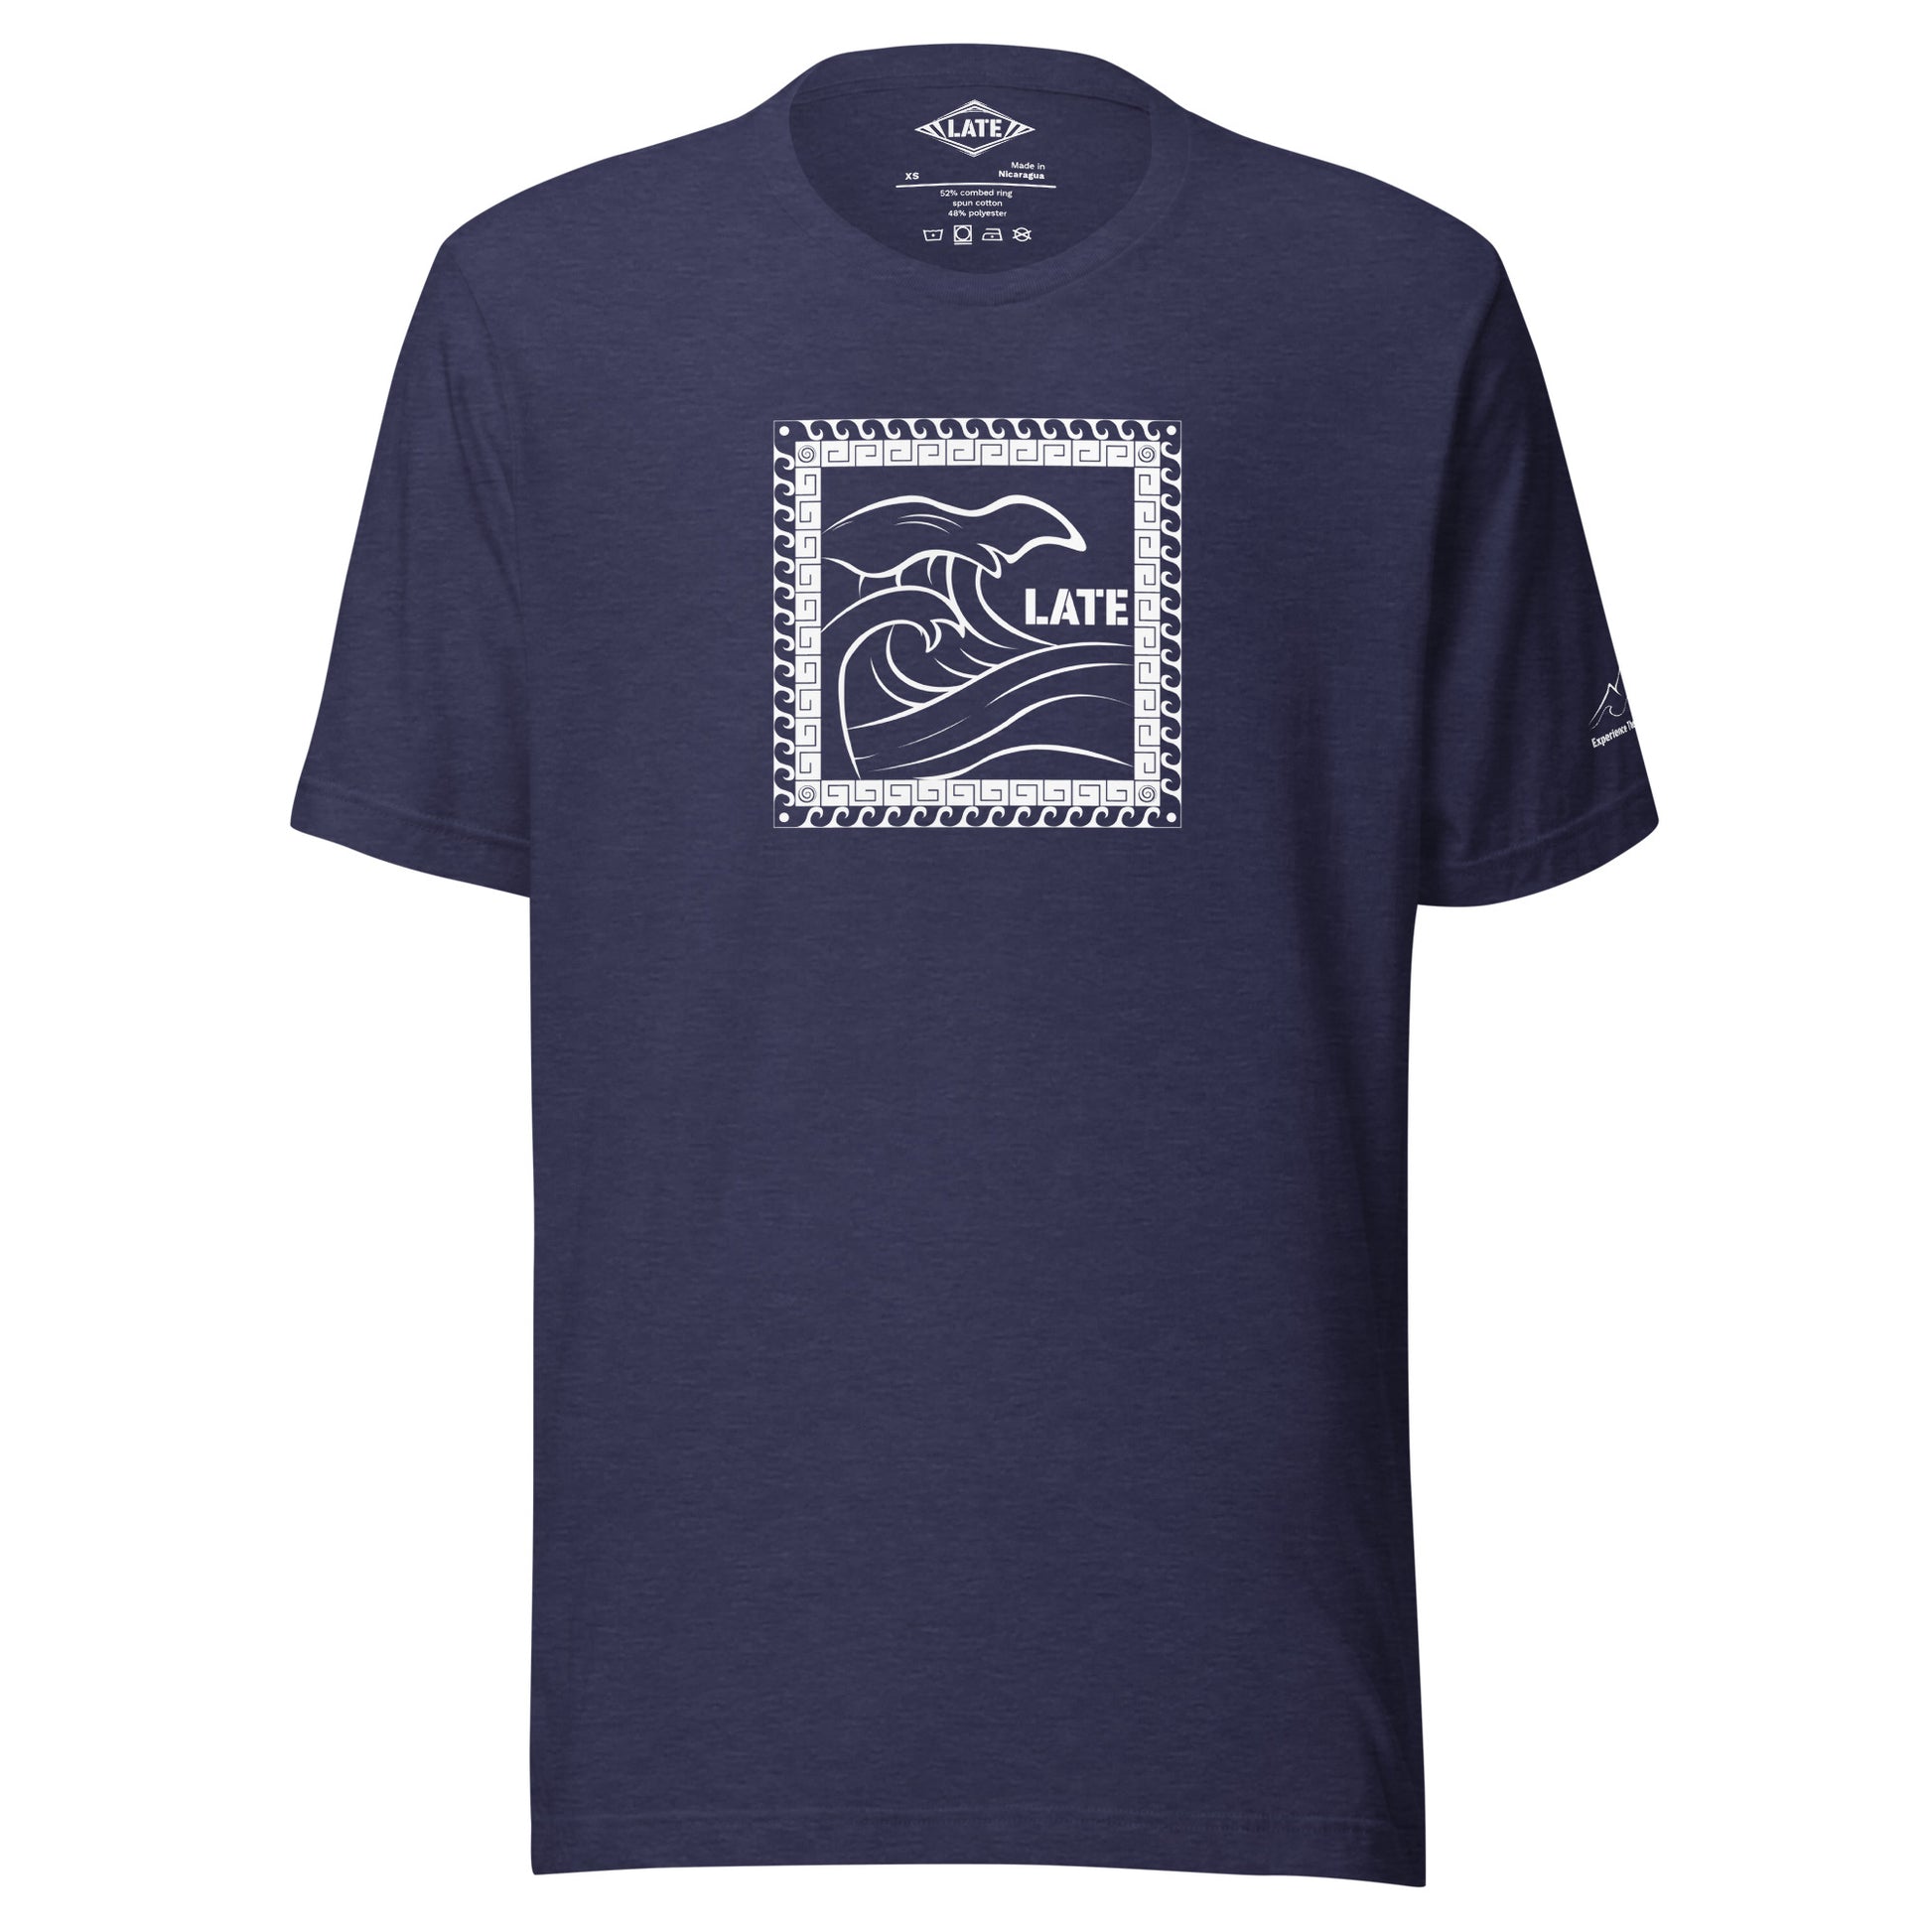 T-Shirt Tricky Wave design vague japonnaise et contour maori texte Late marque de vetement de surf. Tshirt unisex couleur bleu nuit